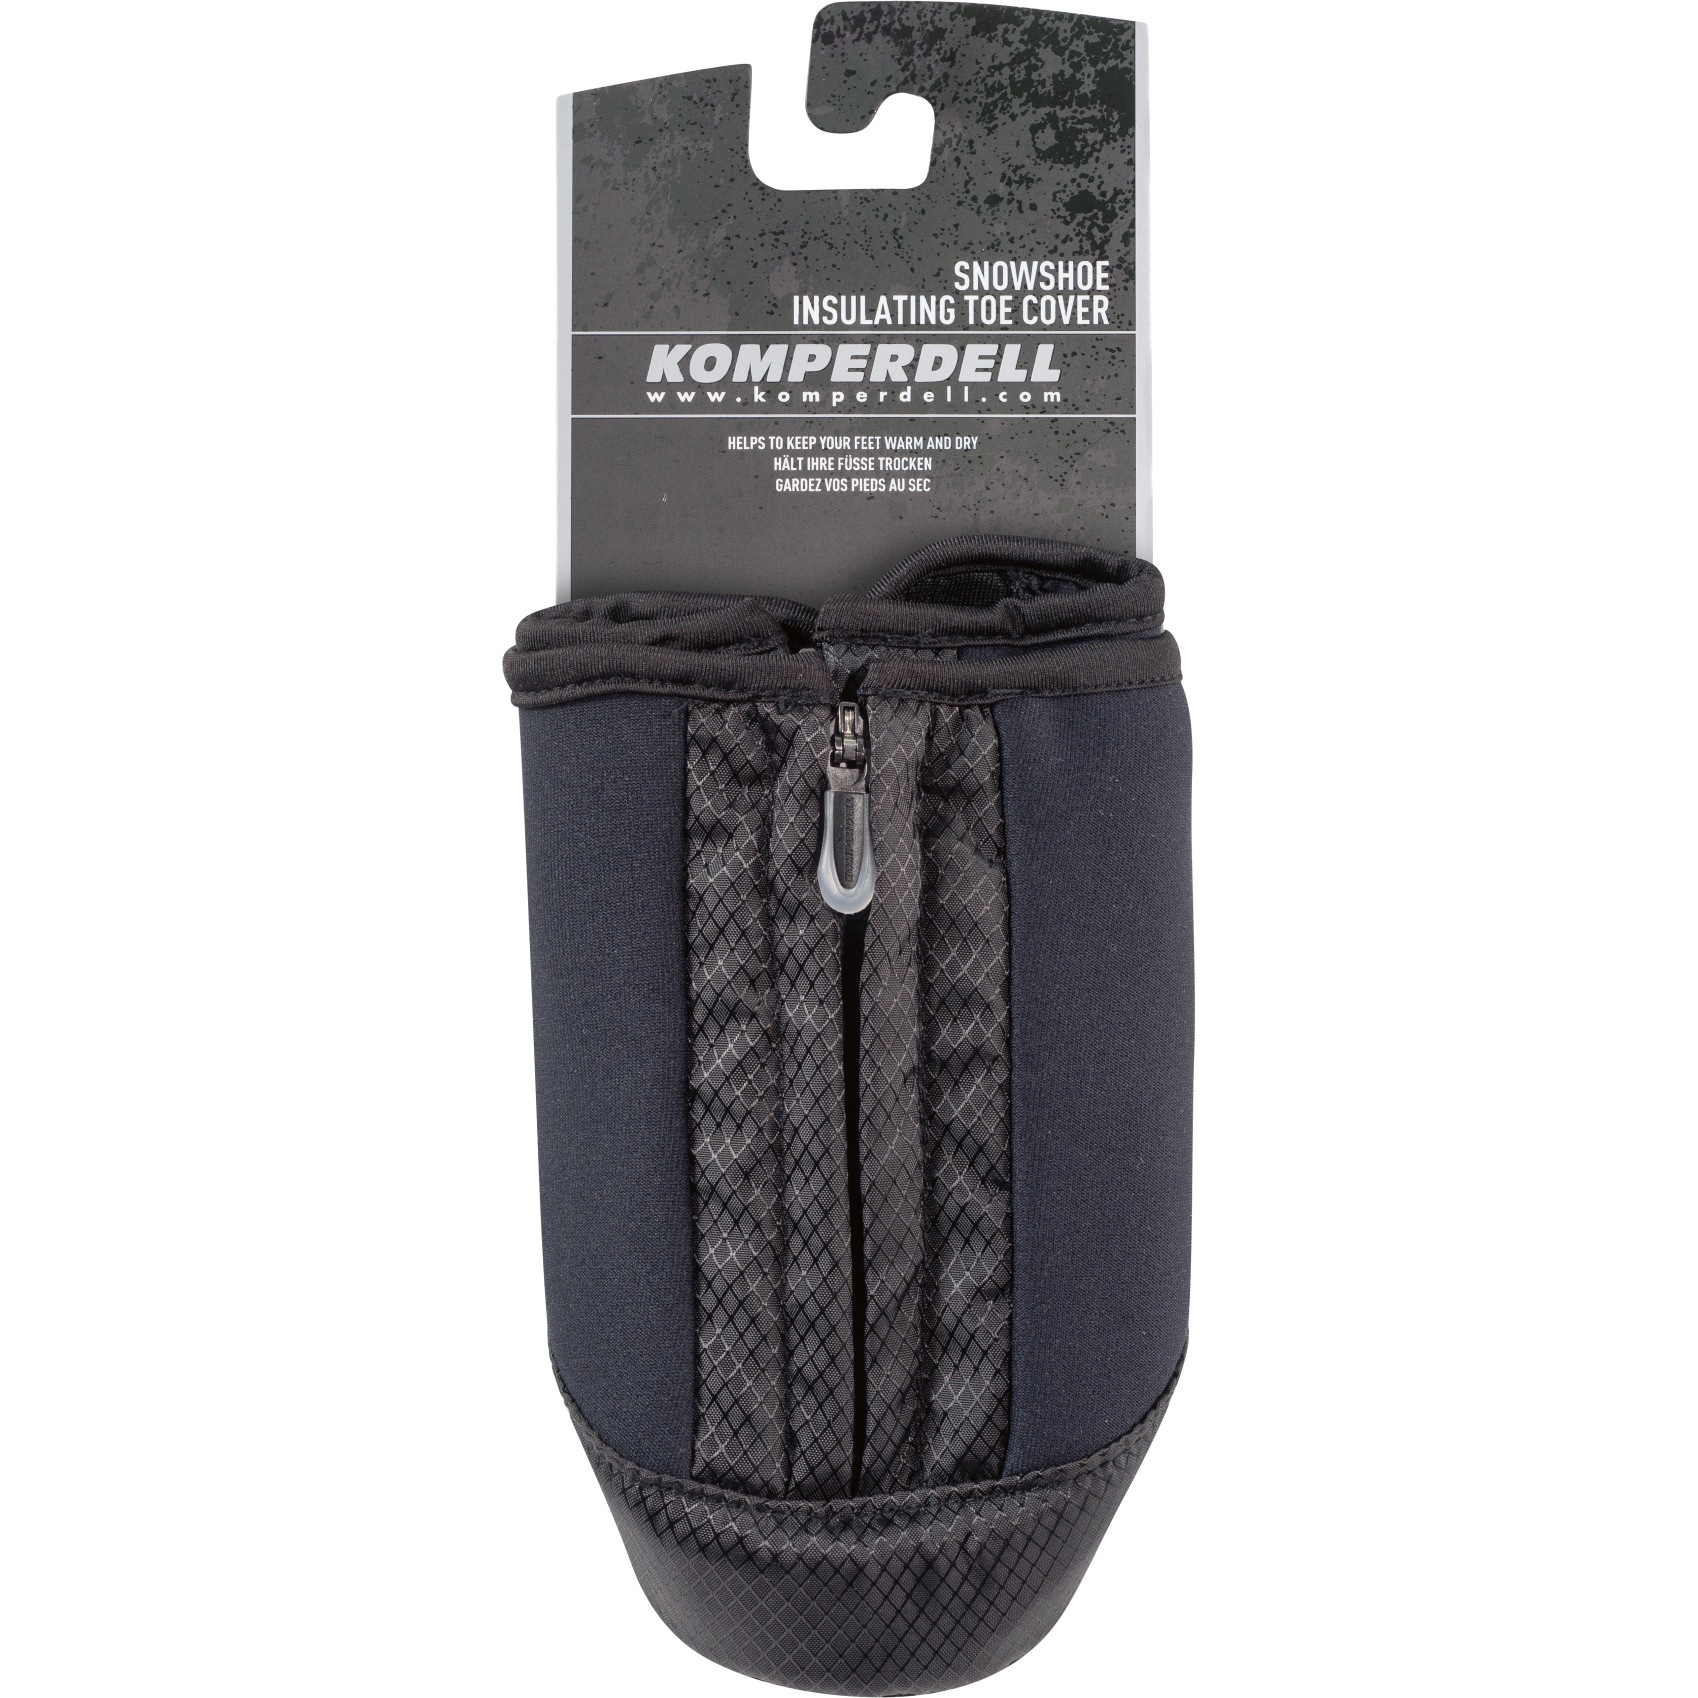 Image of Komperdell Neoprene Snowshoe Toe Cover - black